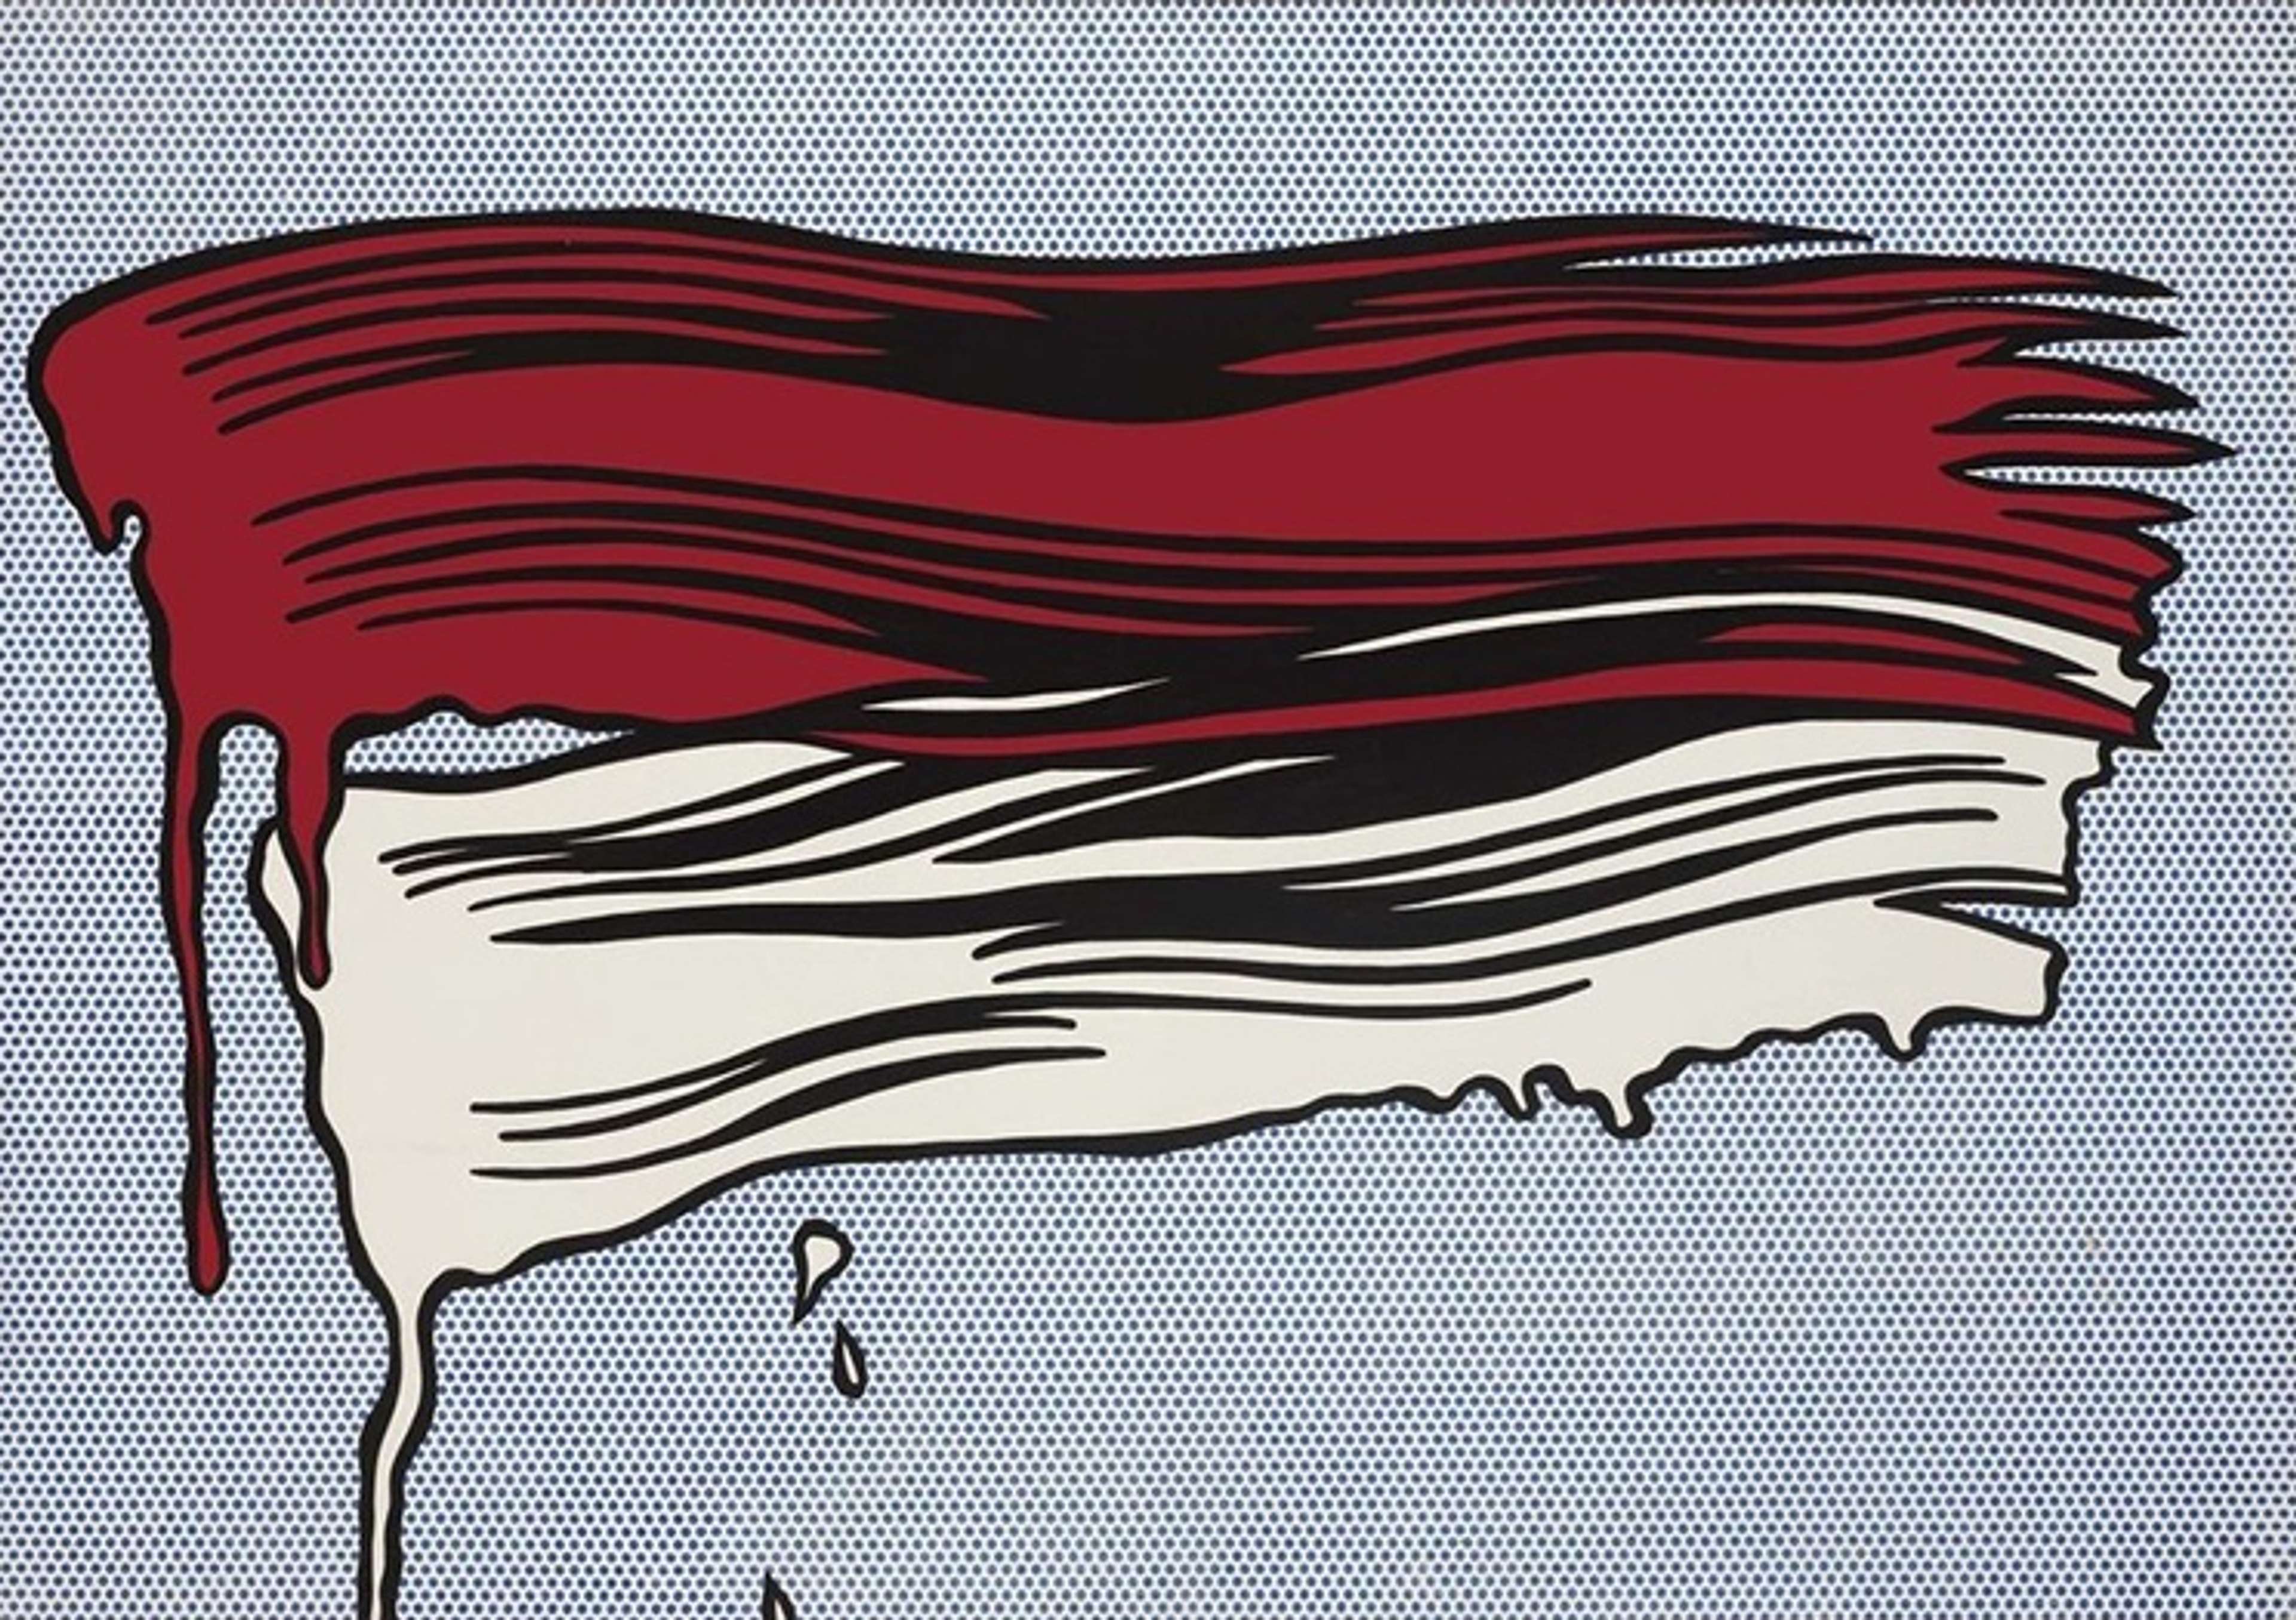 Red And White Brushstrokes by Roy Lichtenstein